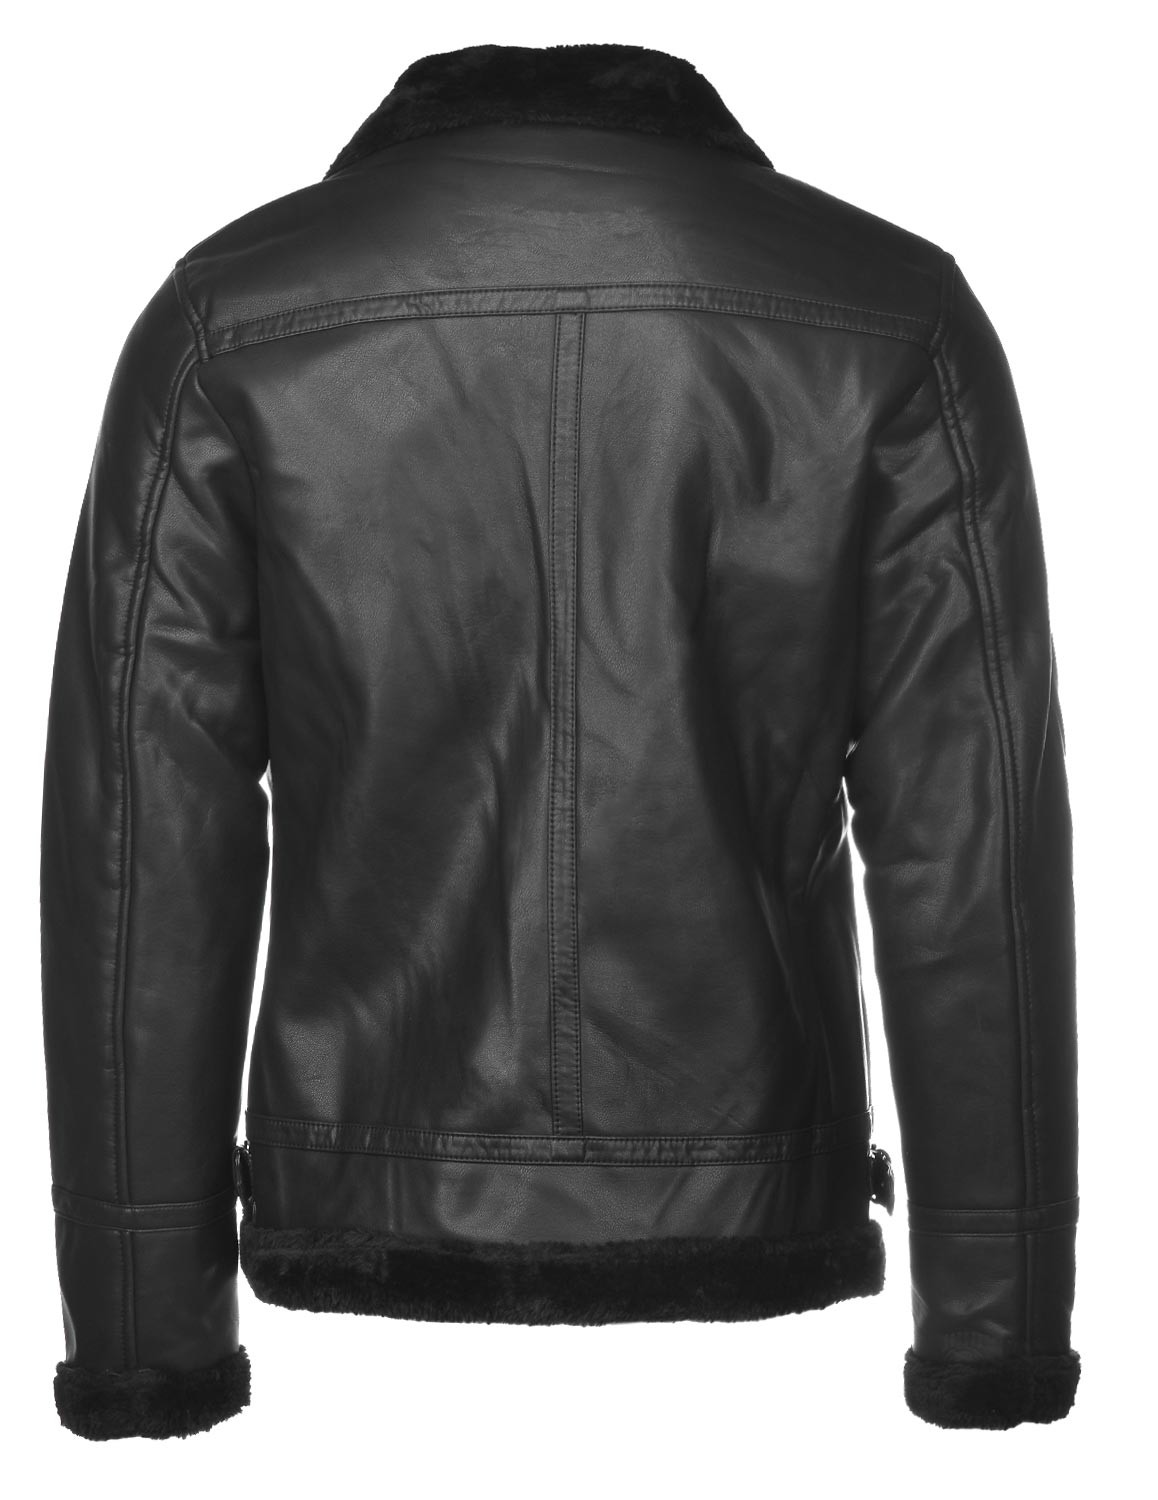 MAGNUS Leather Jacket Black